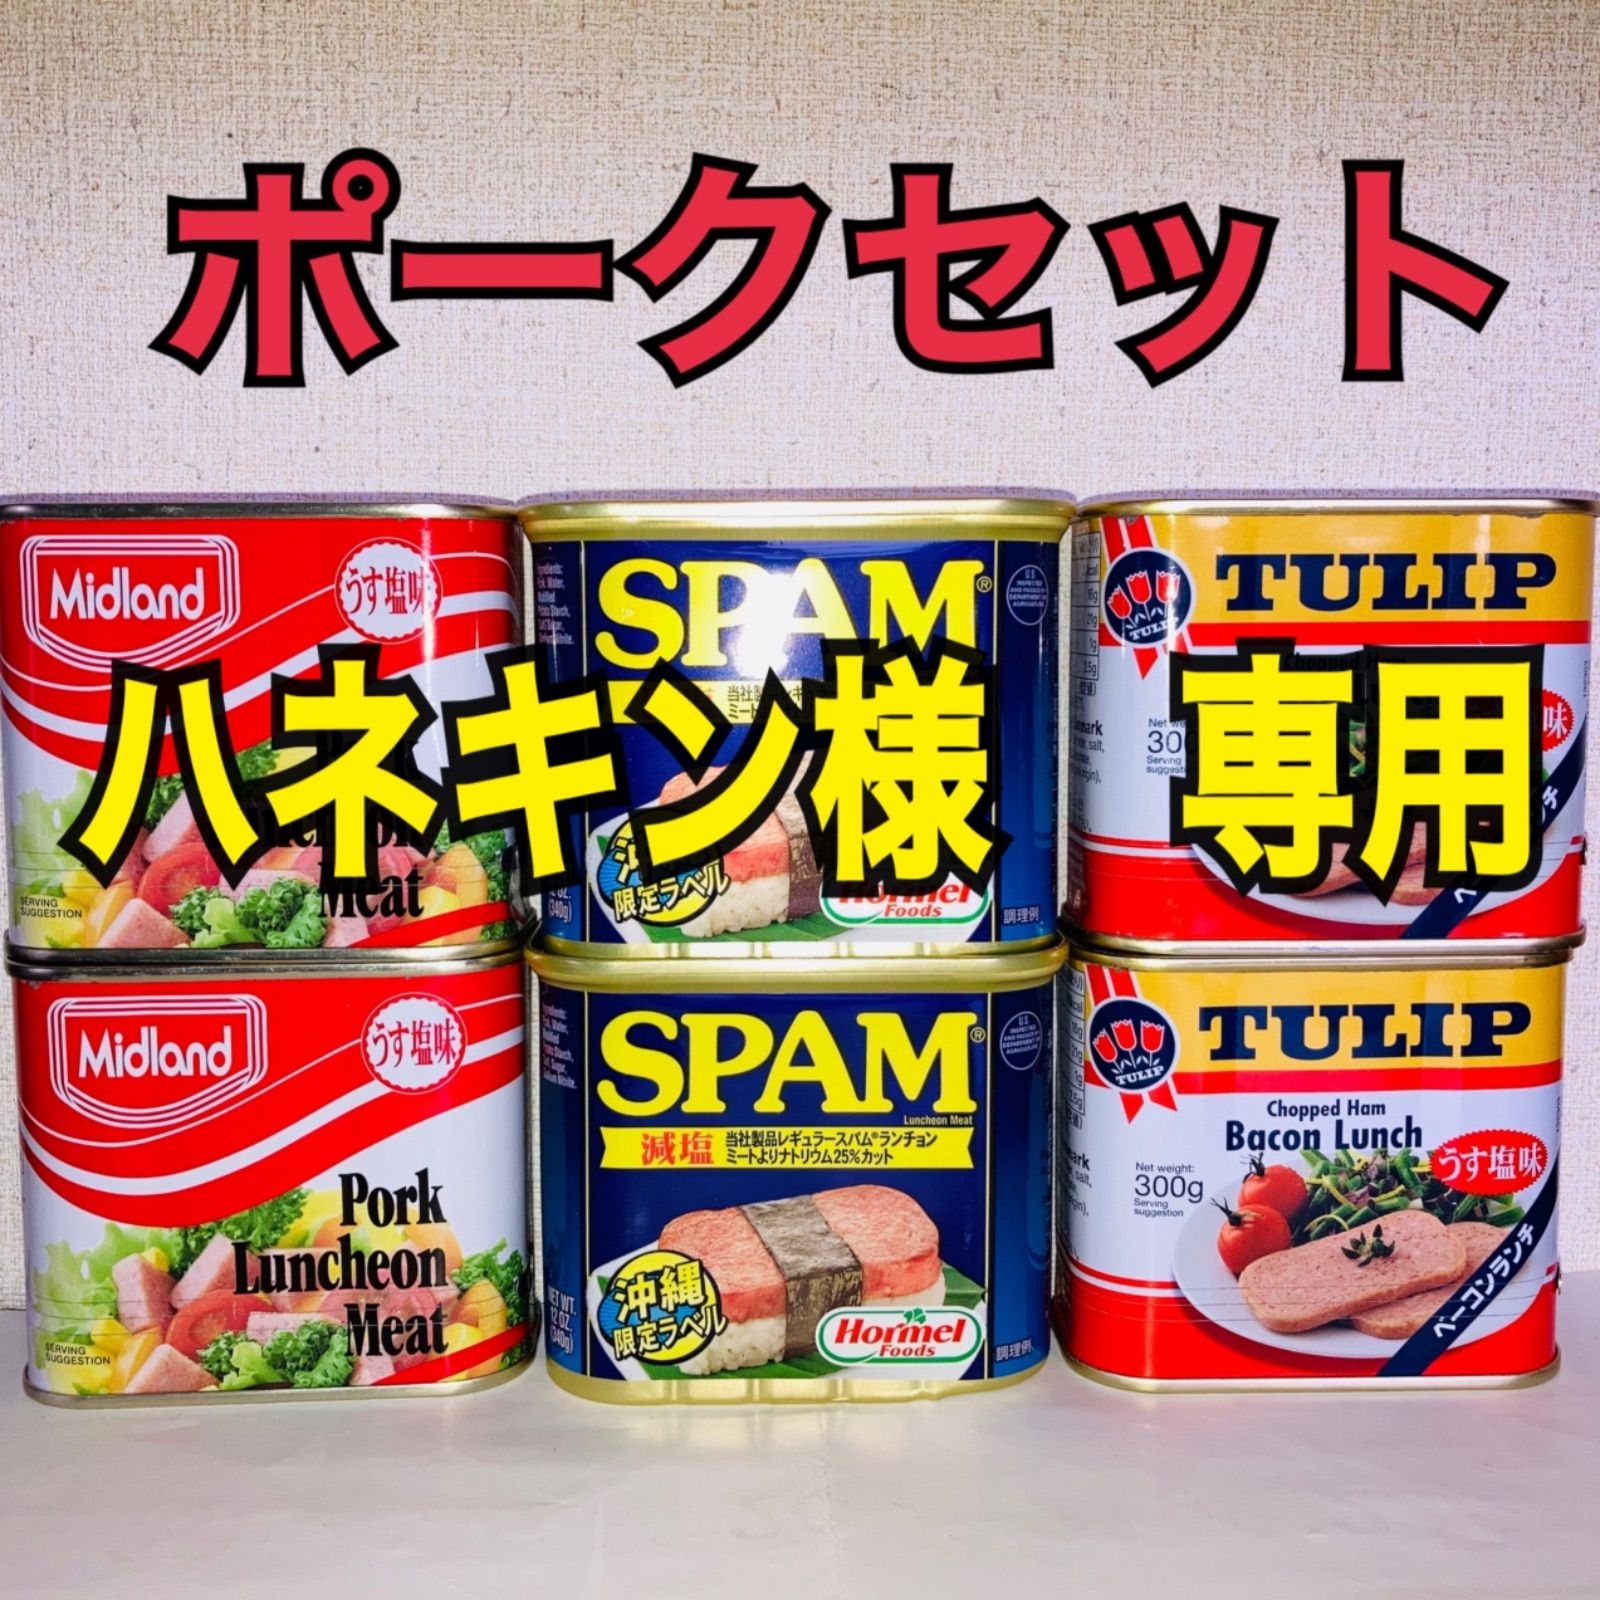 ハネキン様専用】スパム チューリップ ミッドランドポークセット 6缶